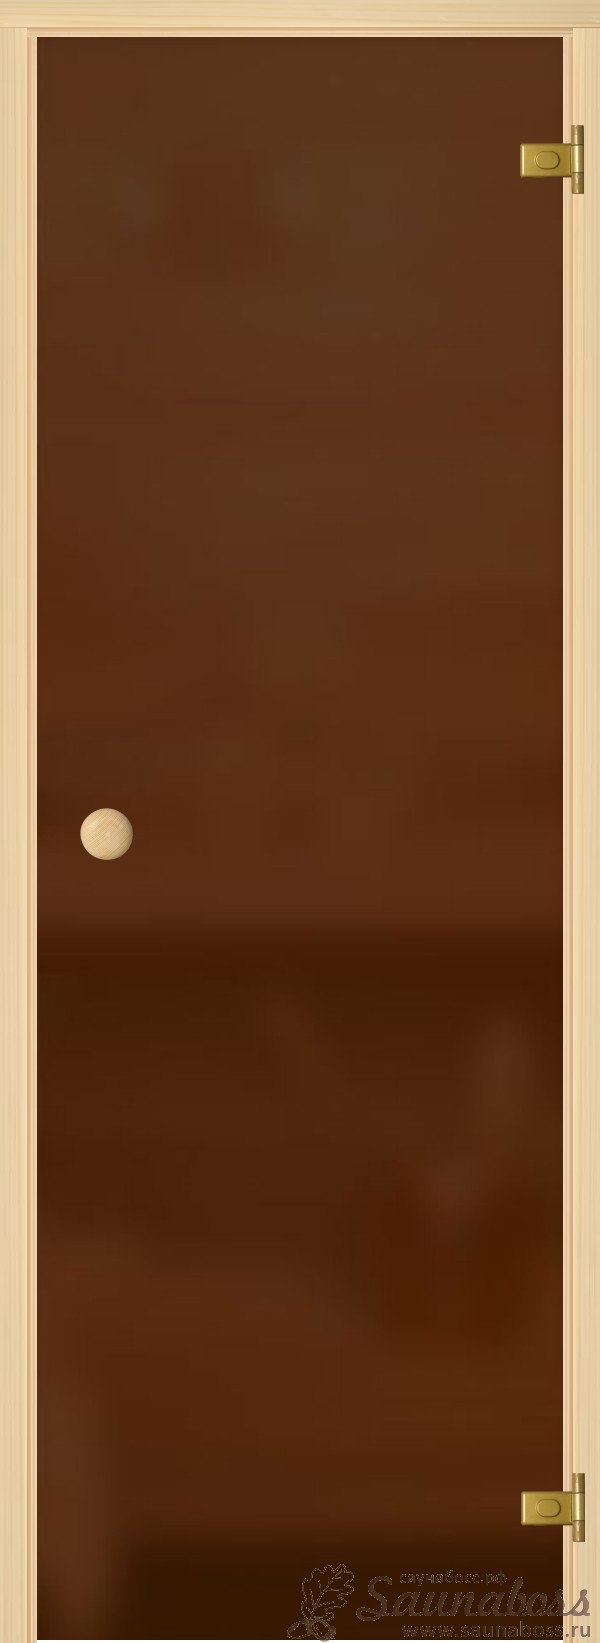 АКМА light Бронза мат. кноб сосна 690*1890, 221Р, фото